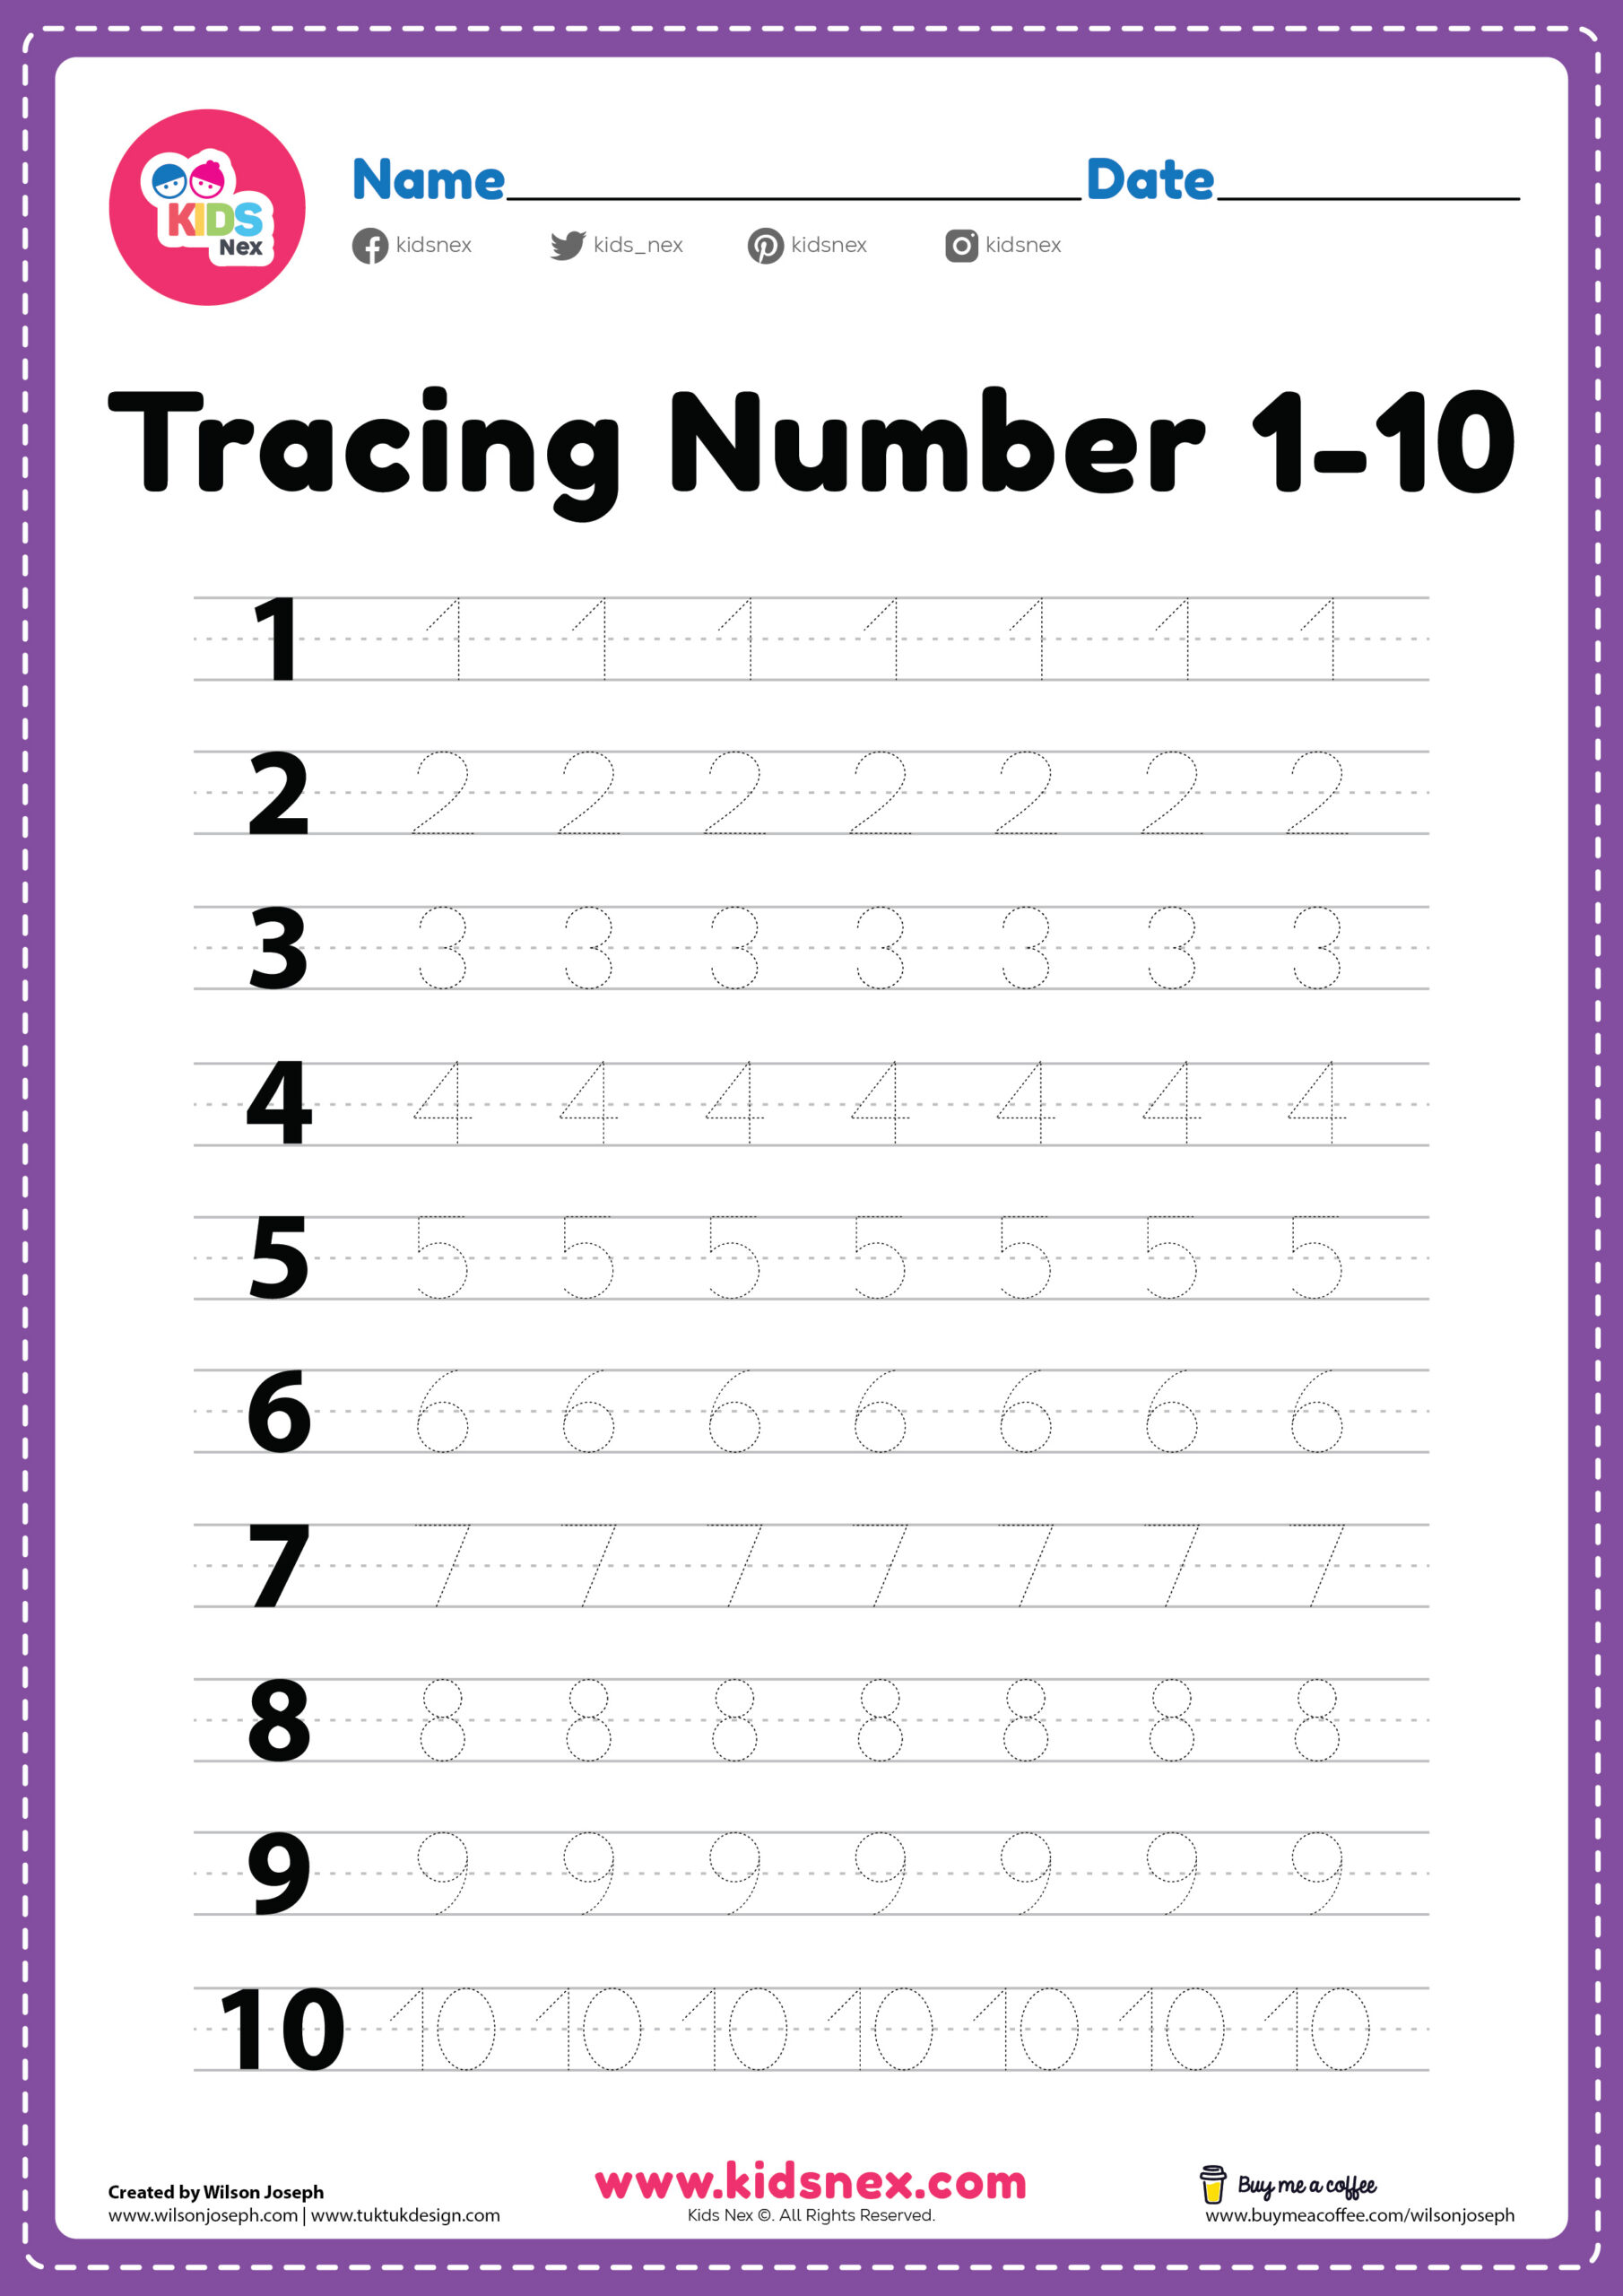 preschool-number-tracing-worksheets-1-10-worksheets-pdf-number-tracing-1-10-worksheet-free